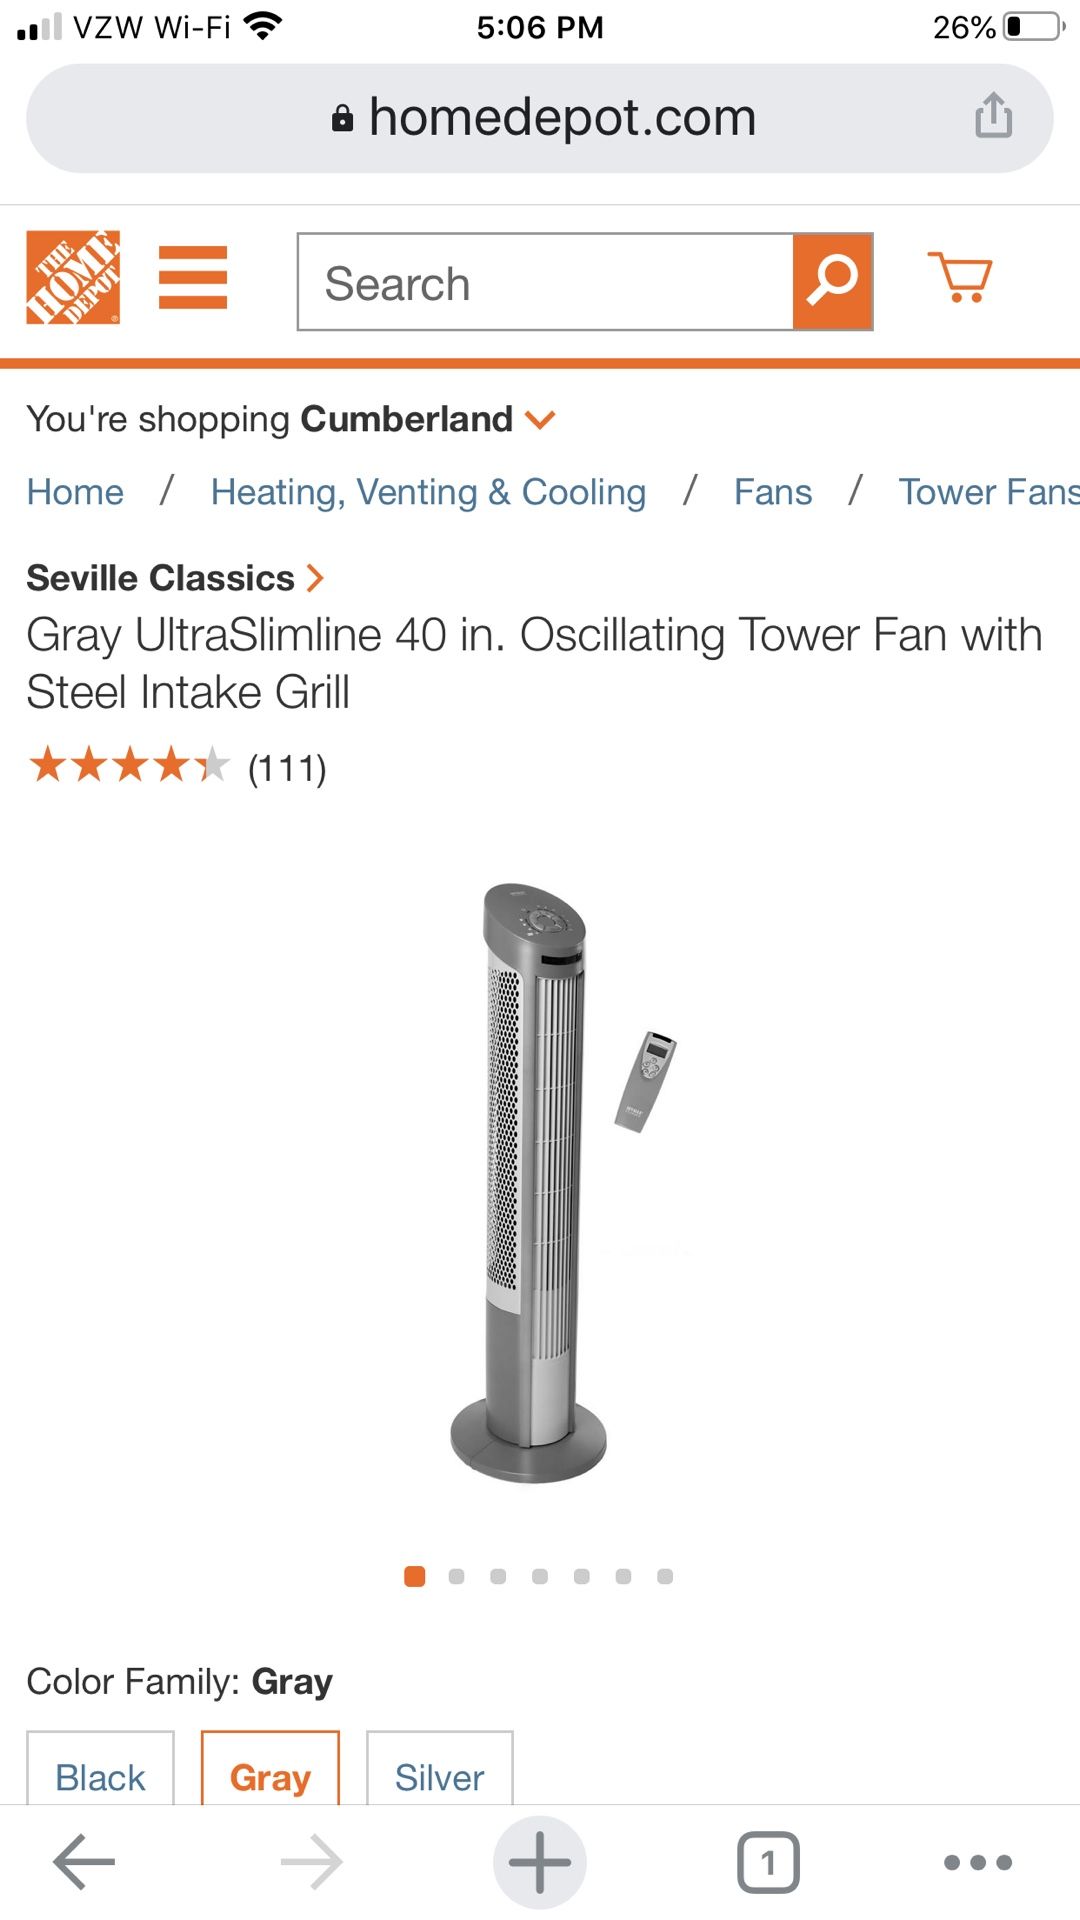 Gray UltraSlimline 40 in. Oscillating Tower Fan with Steel Intake Grill